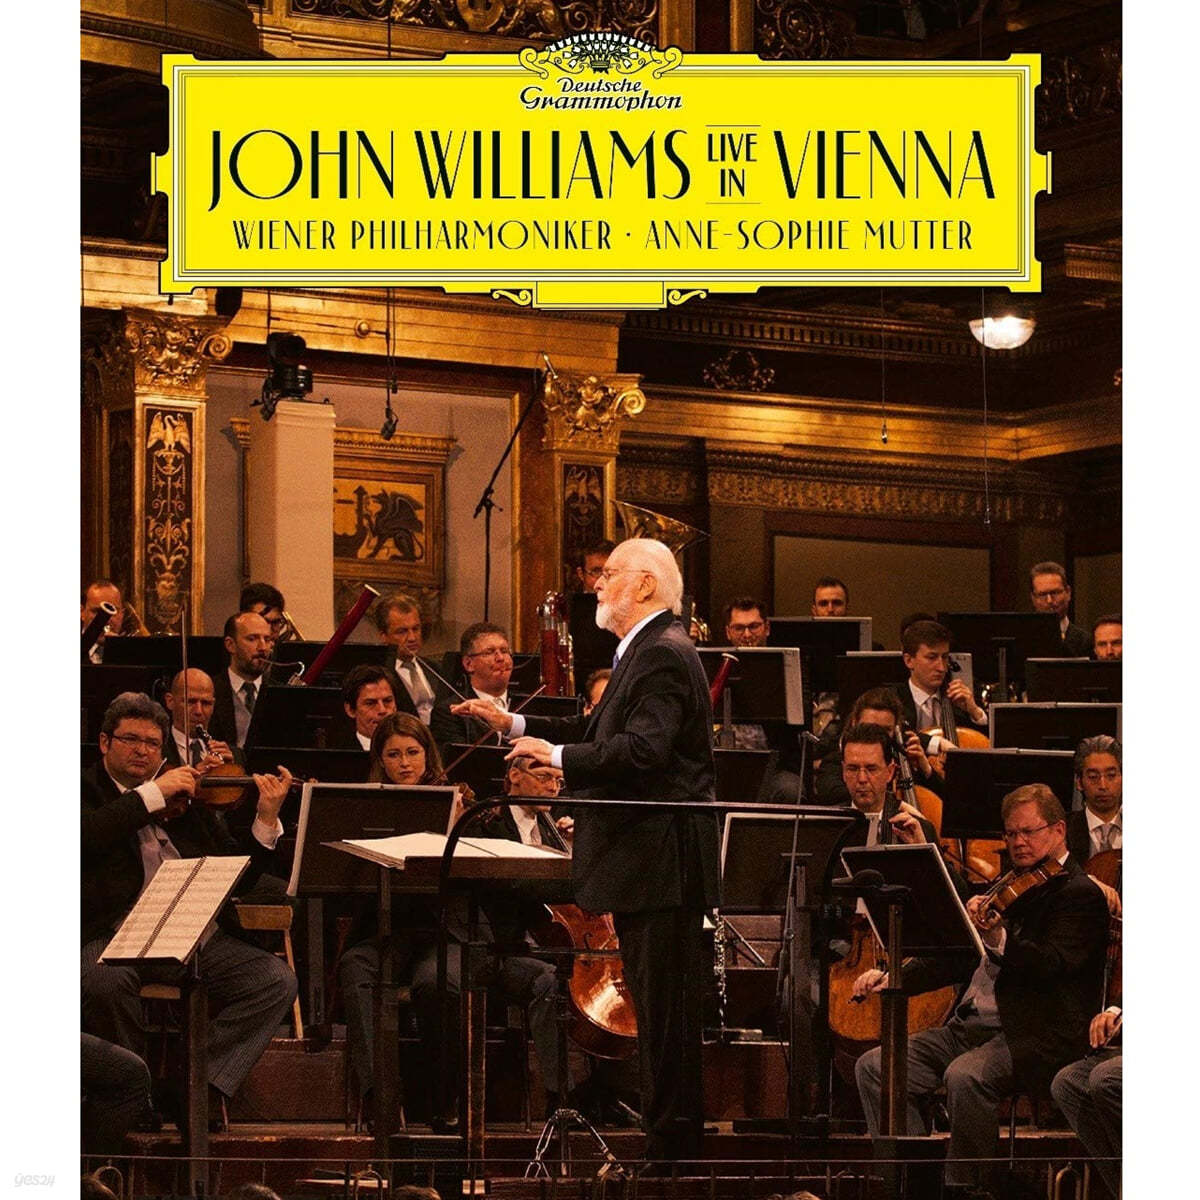 존 윌리엄스 빈 실황녹음 (John Williams Live in Vienna) [CD + Blu-ray] 